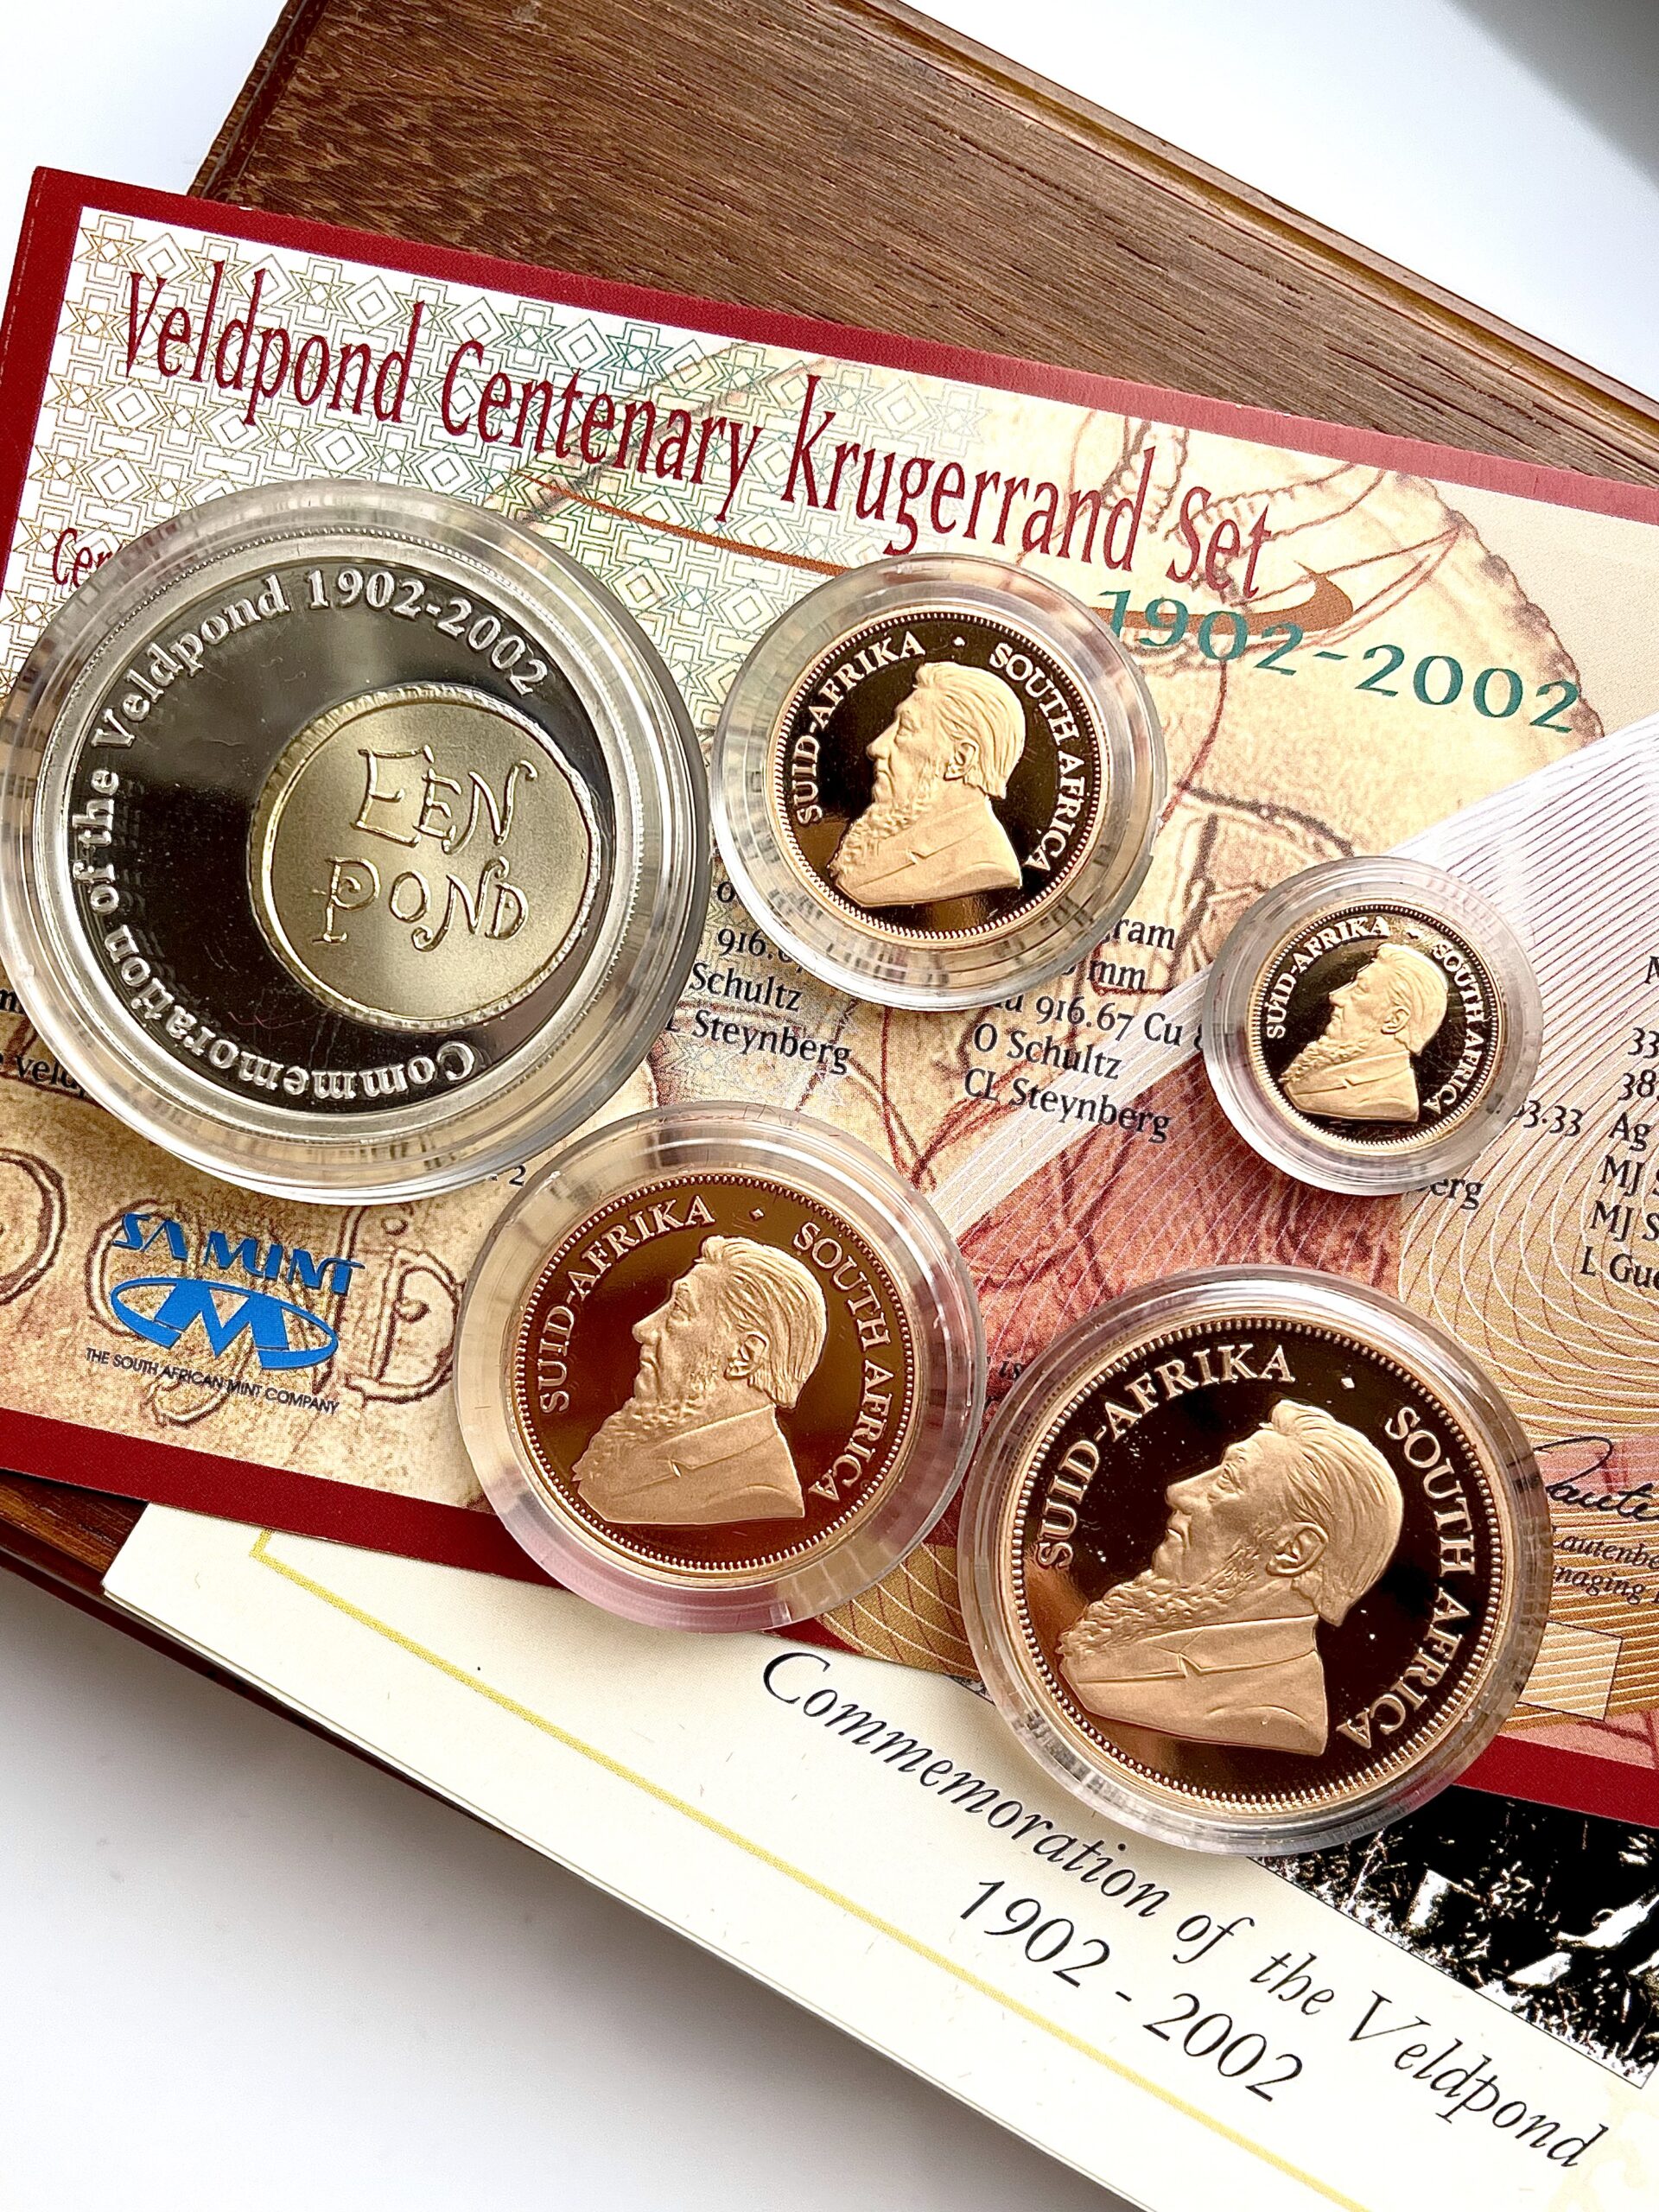 Set del centenario di Kruegerrand 2002 Veldpond